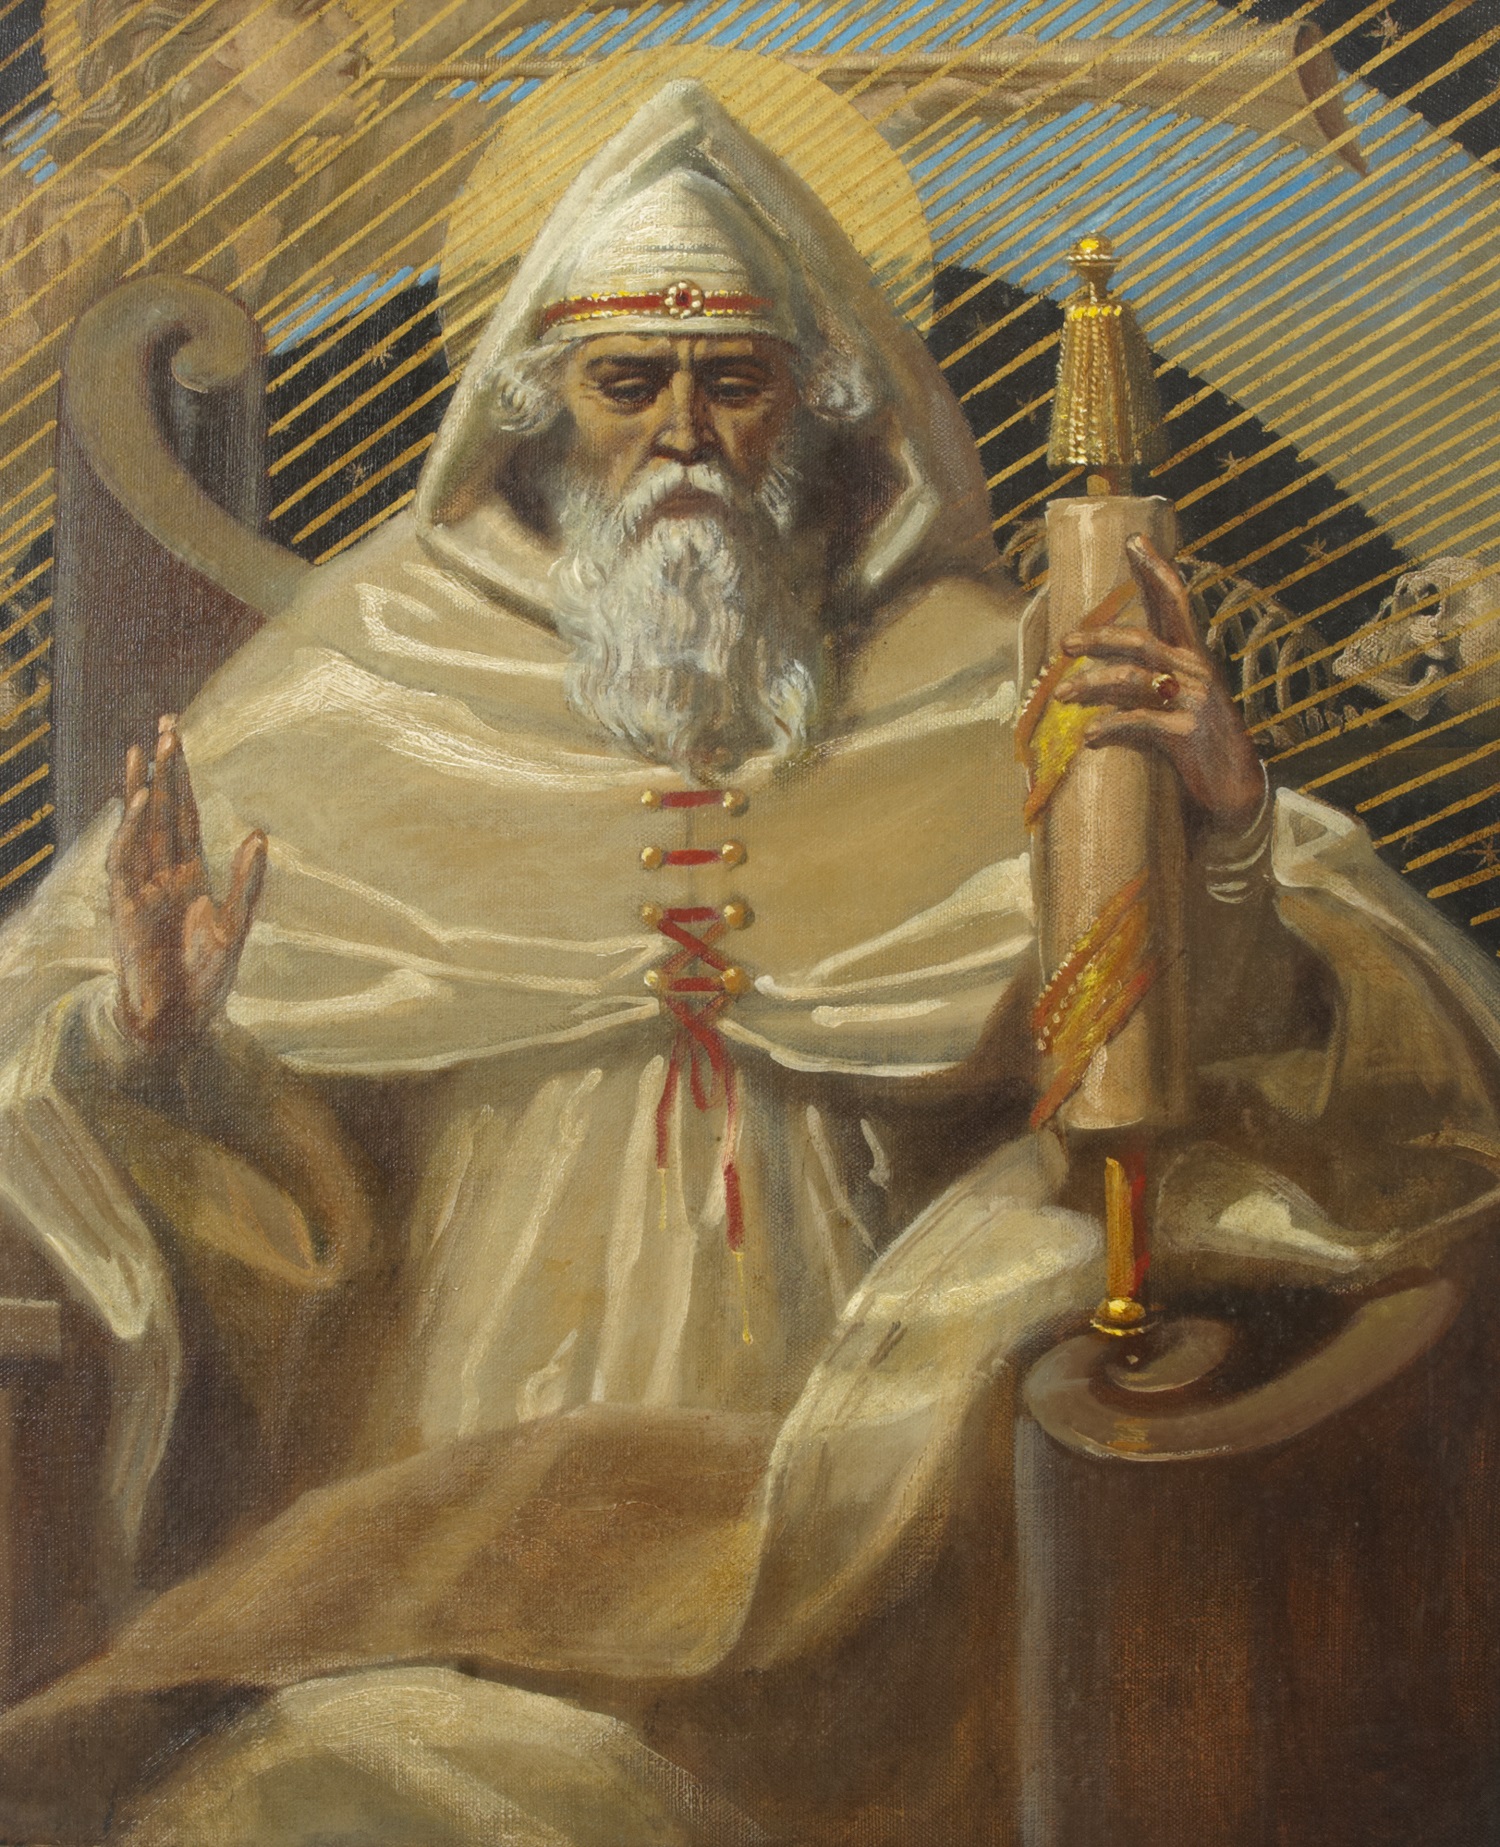 Ezekiel, the Priest